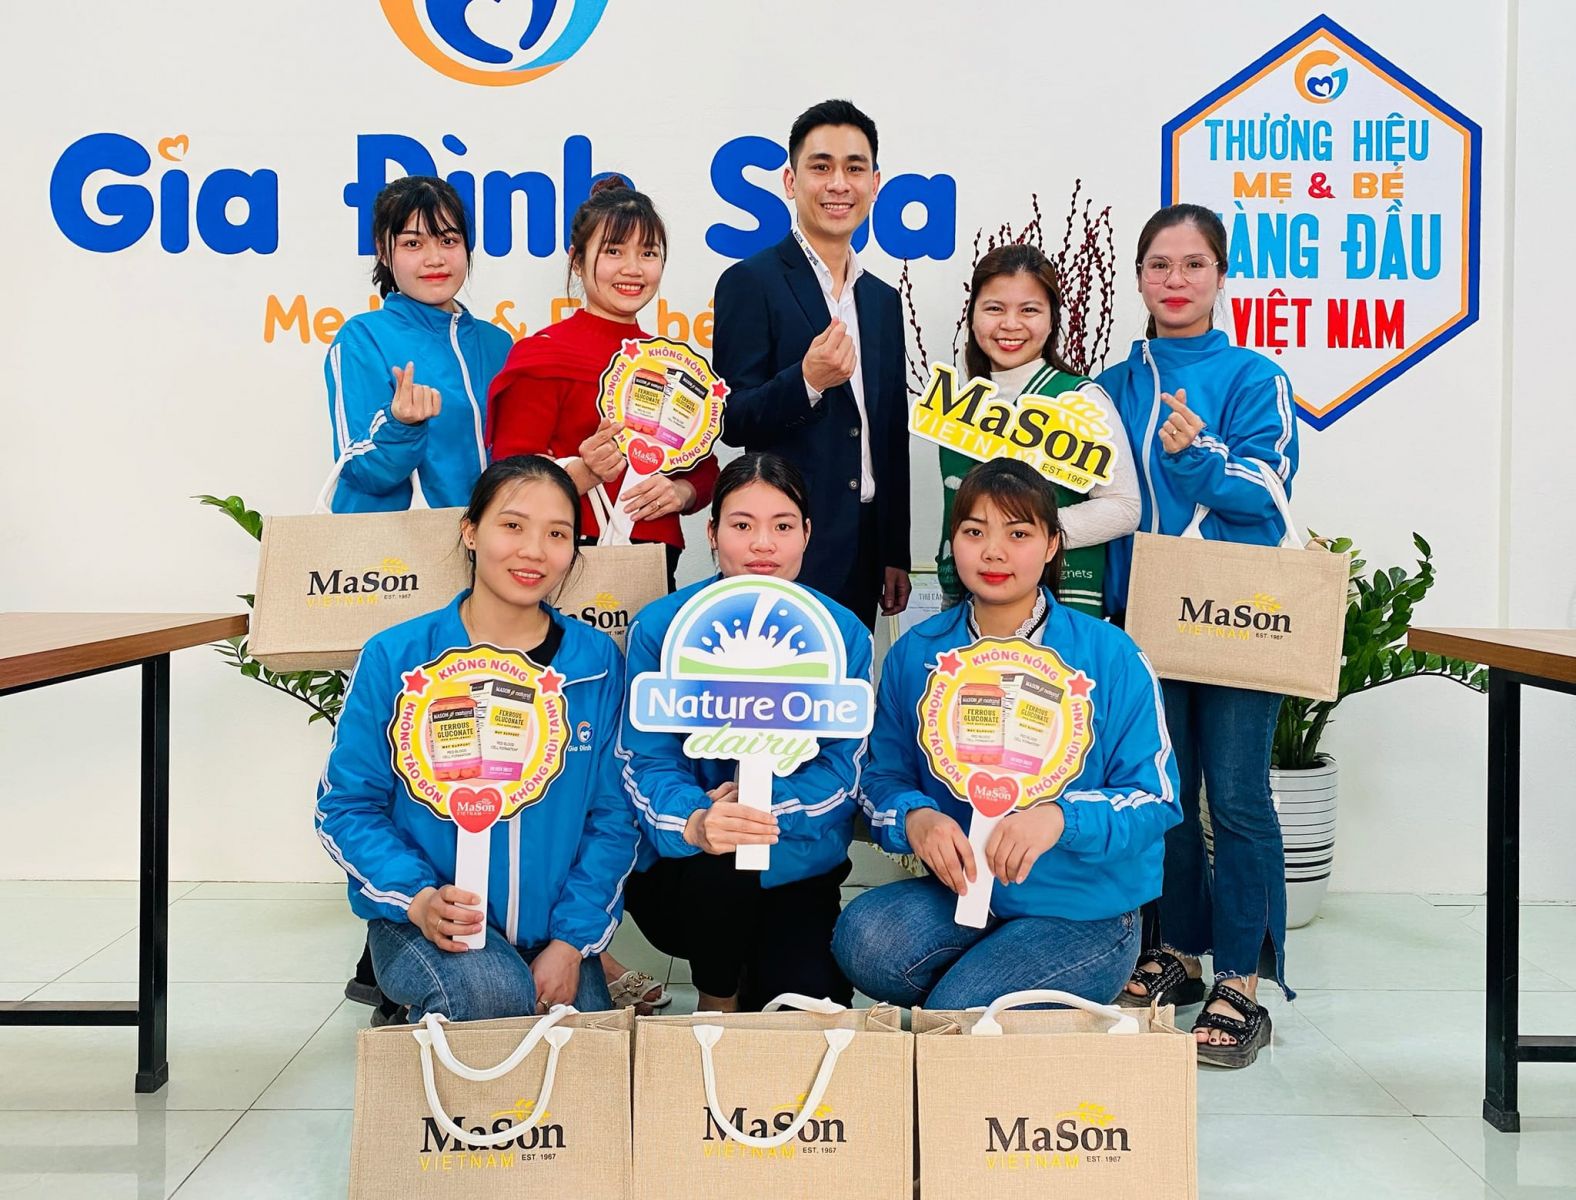 Mason Việt Nam đào sản phẩm tại Hệ thống Gia đình Sữa – Thanh Hóa